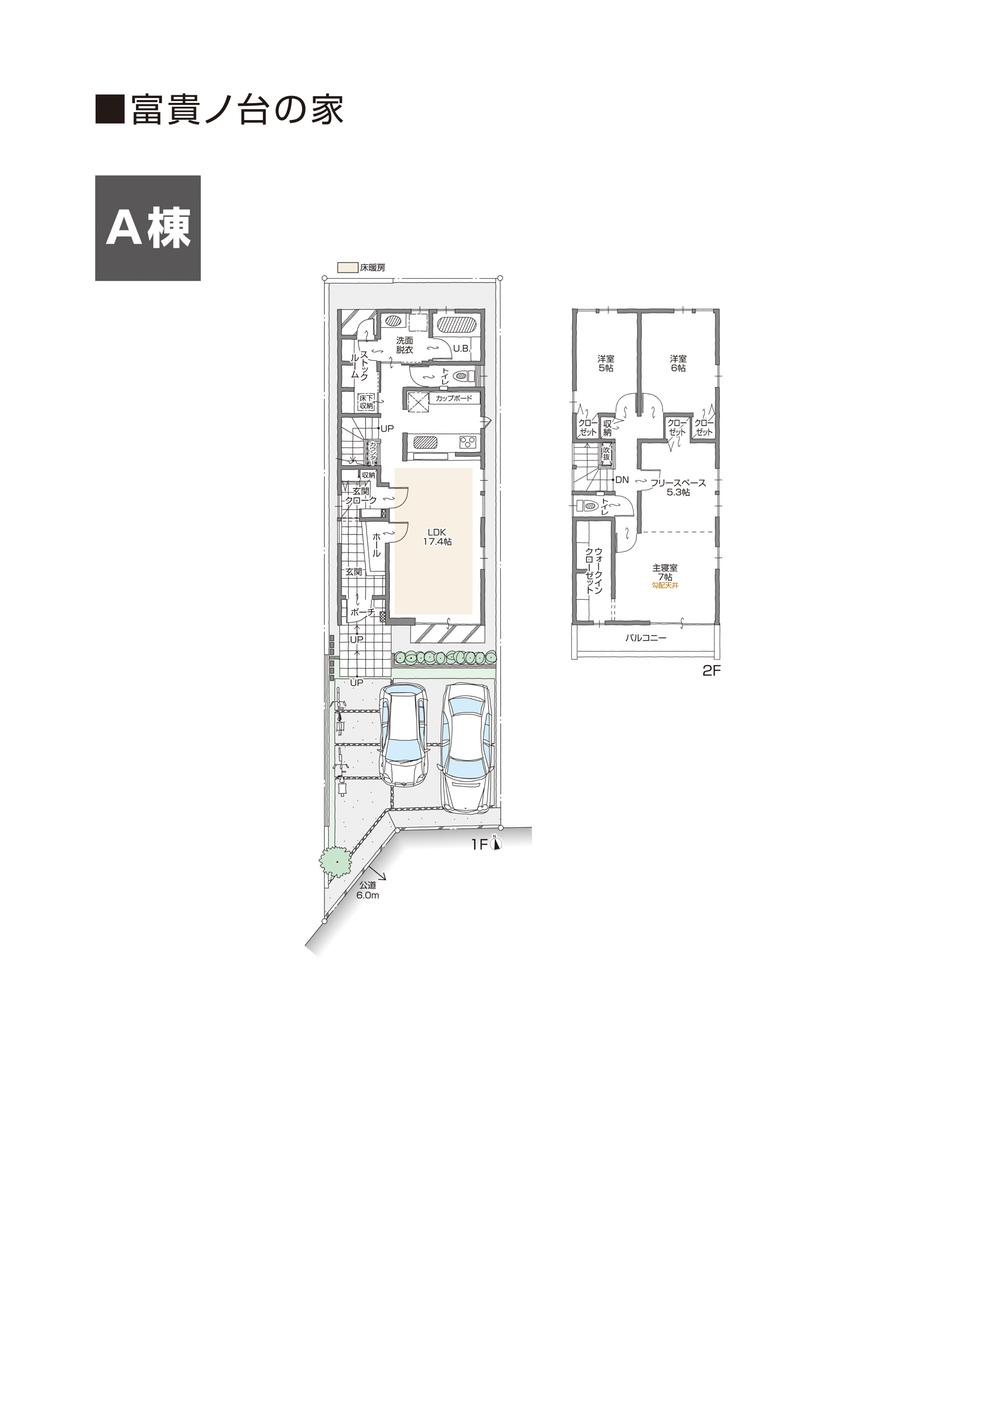 Floor plan. (A Building), Price 35,200,000 yen, 3LDK+S, Land area 122.66 sq m , Building area 106.15 sq m